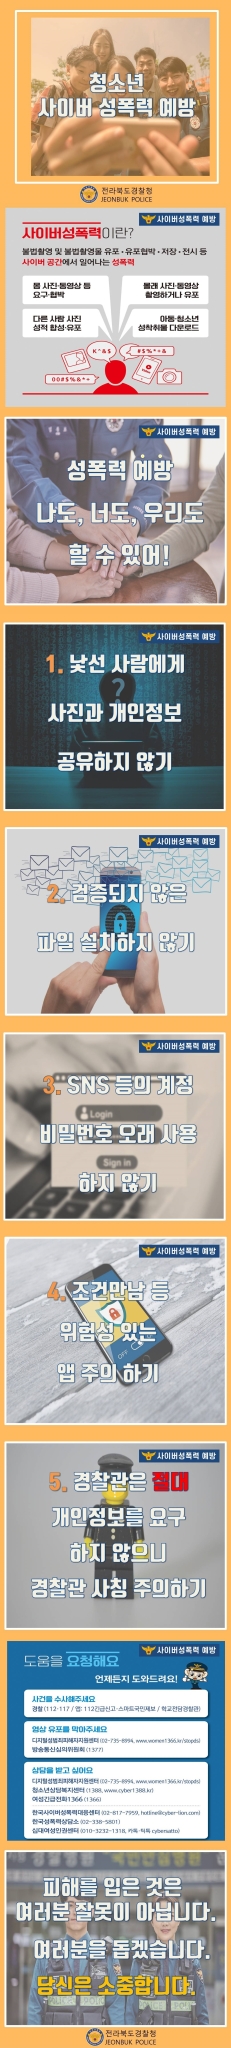 사이버 성폭력 예방 카드뉴스